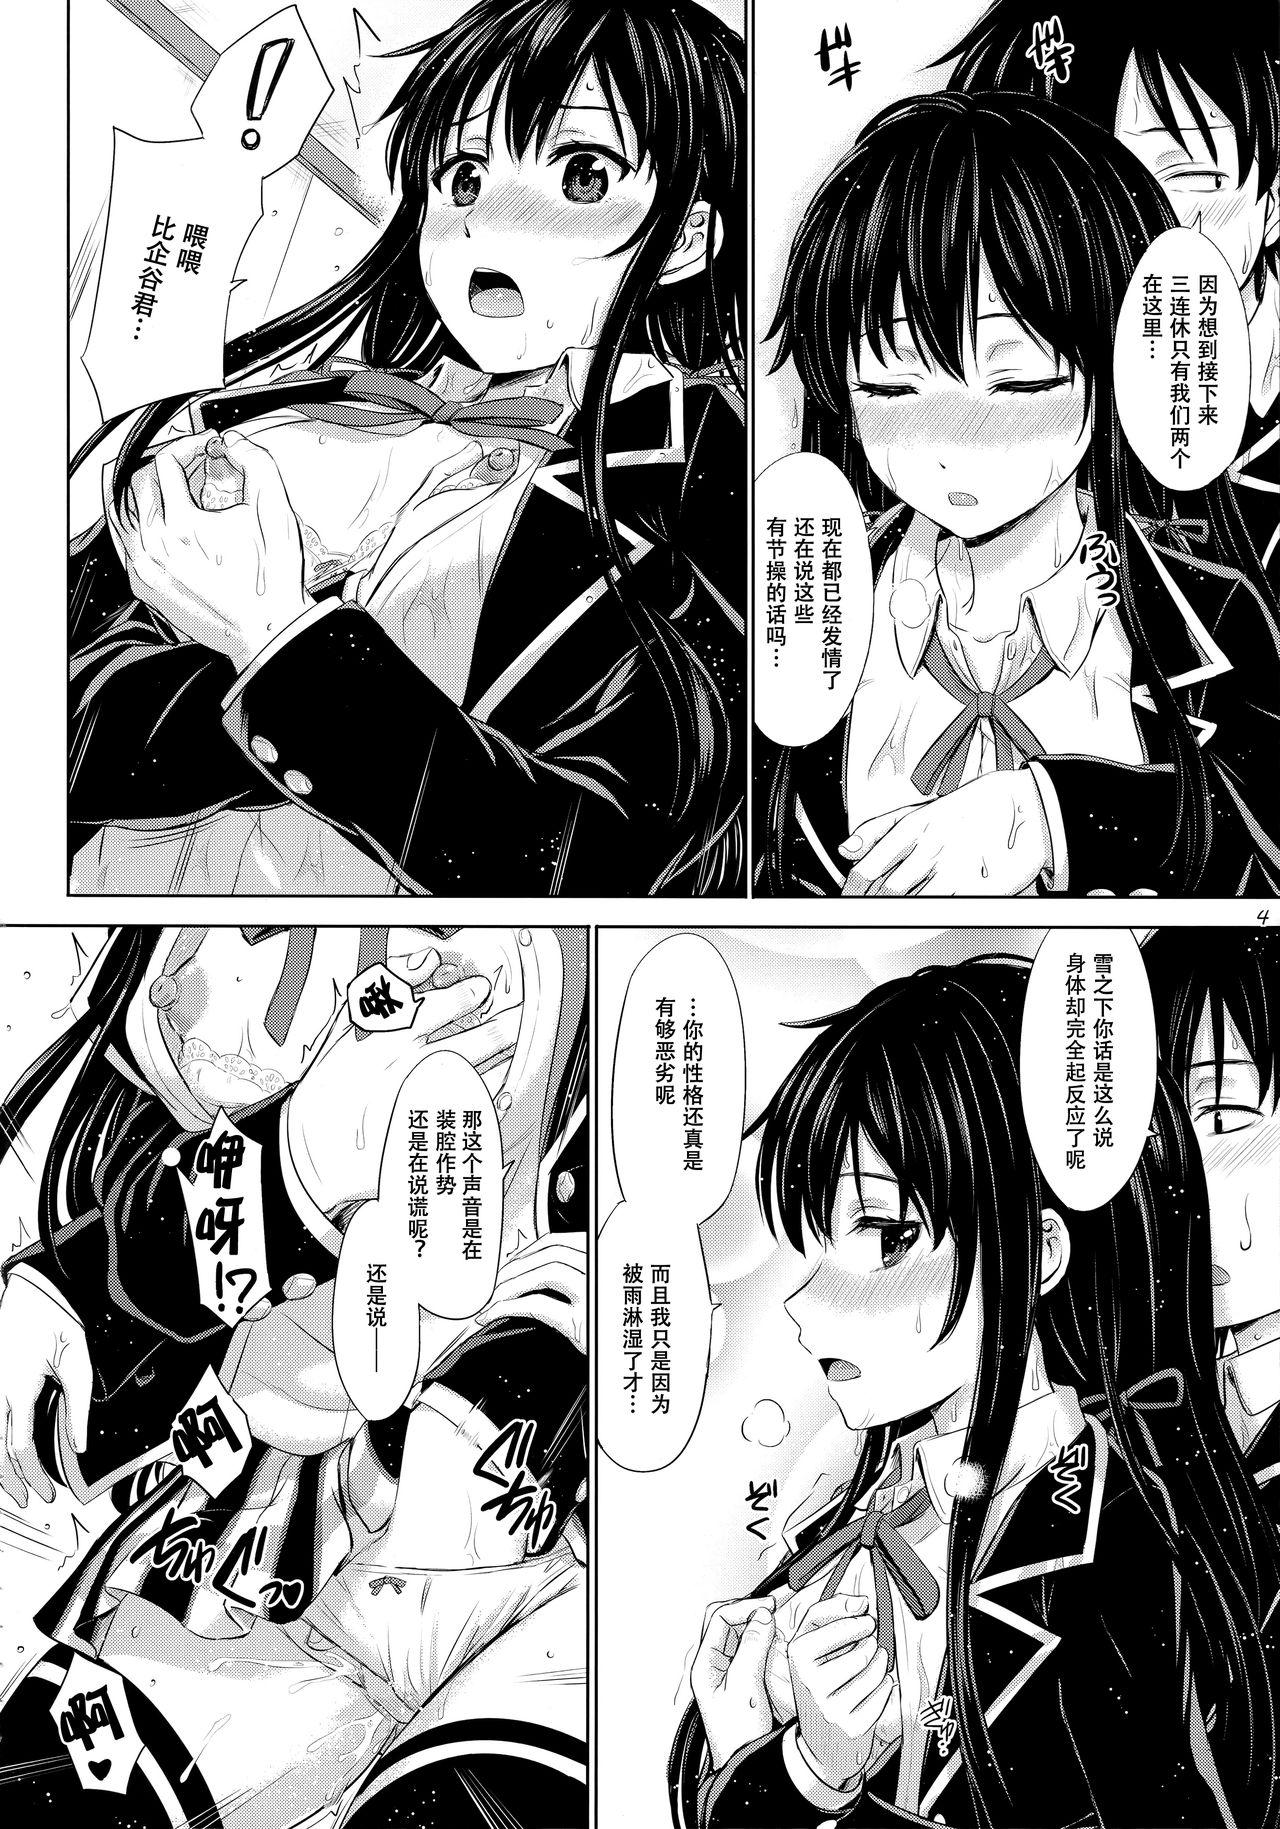 Topless Sanrenkyuu wa Asa made Nama Yukinon. - Yahari ore no seishun love come wa machigatteiru Ball Sucking - Page 4